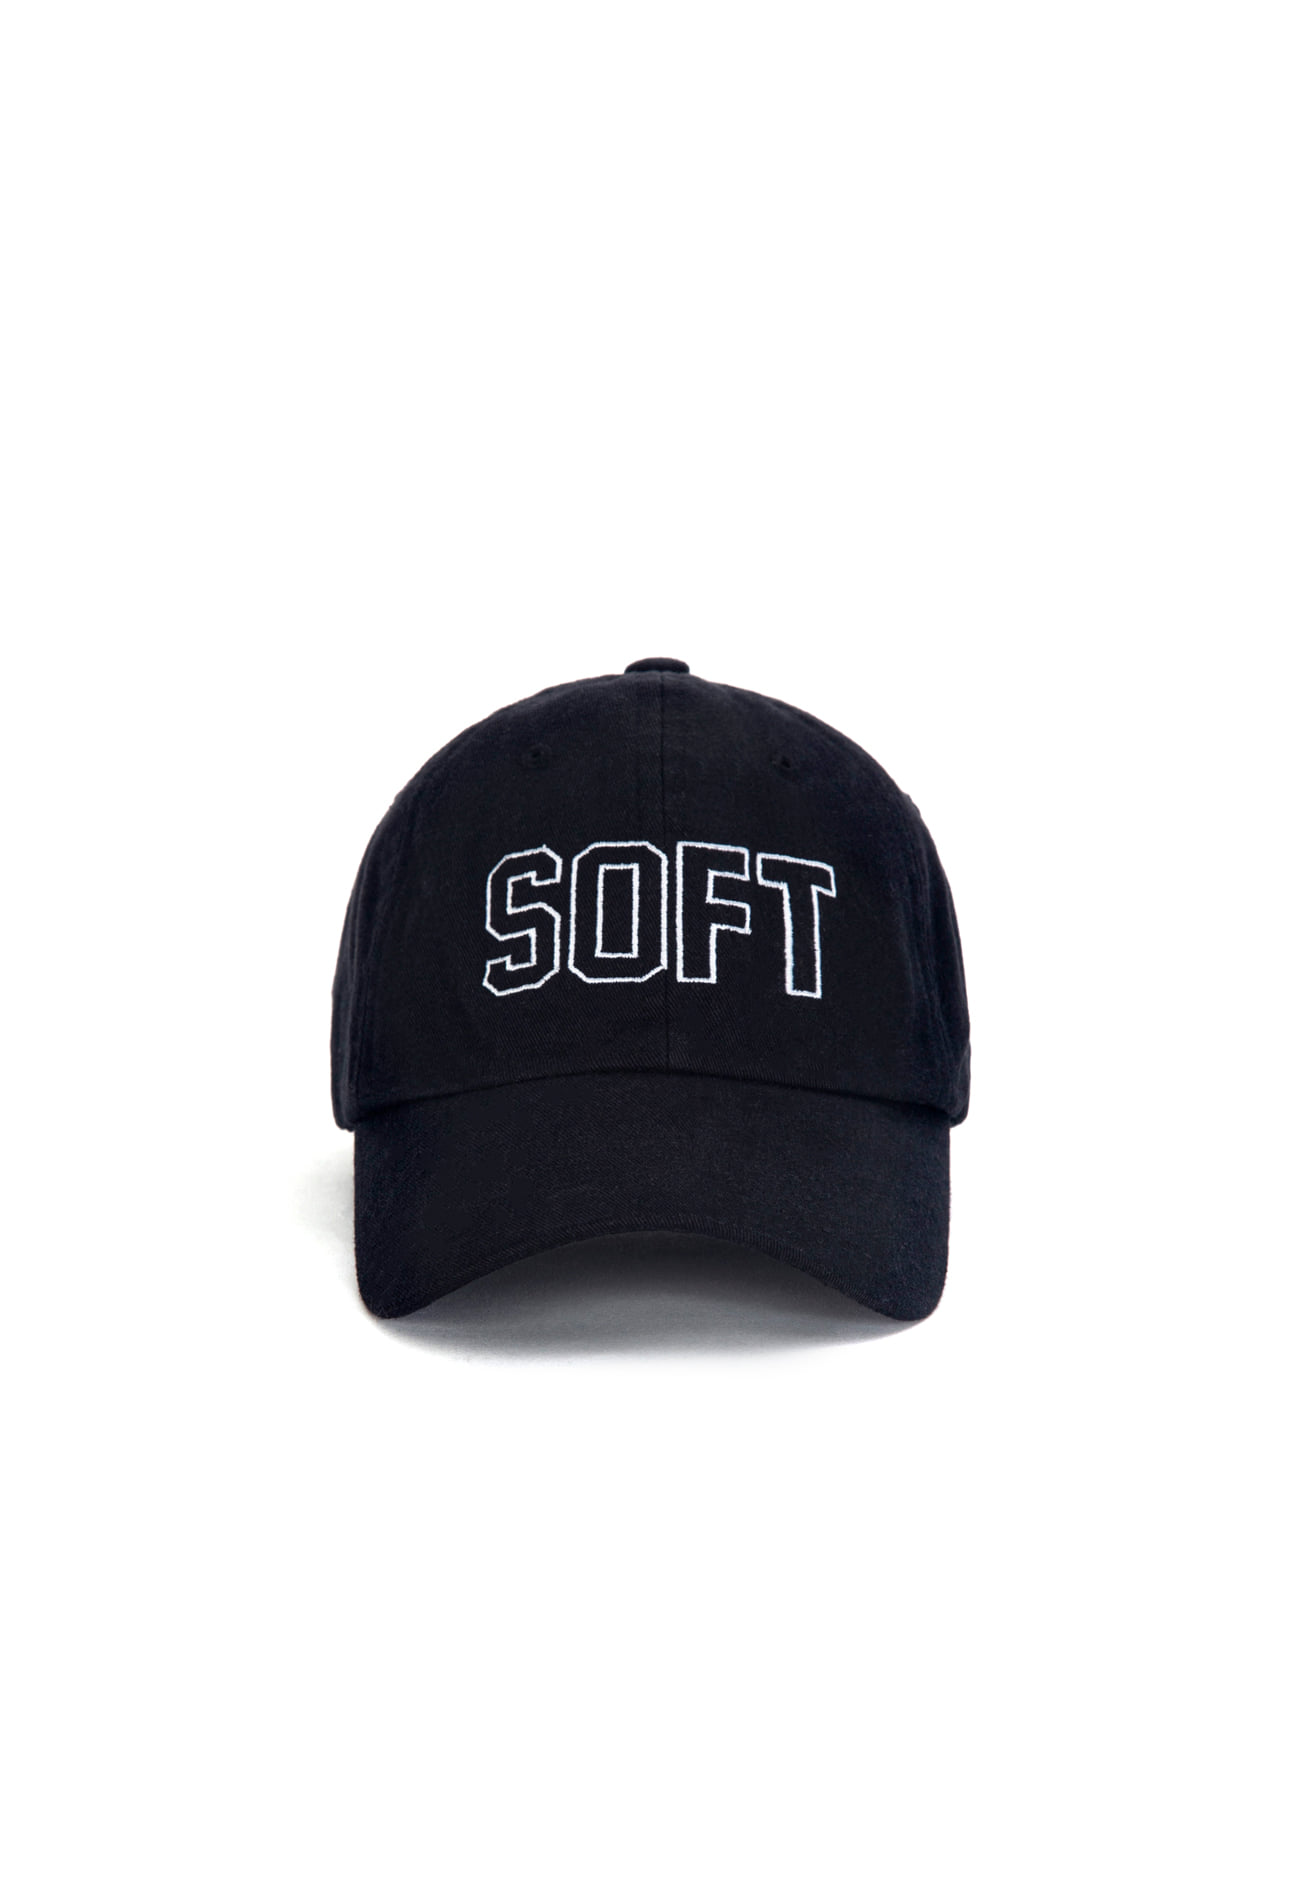 SOFT CAP (BLACK)